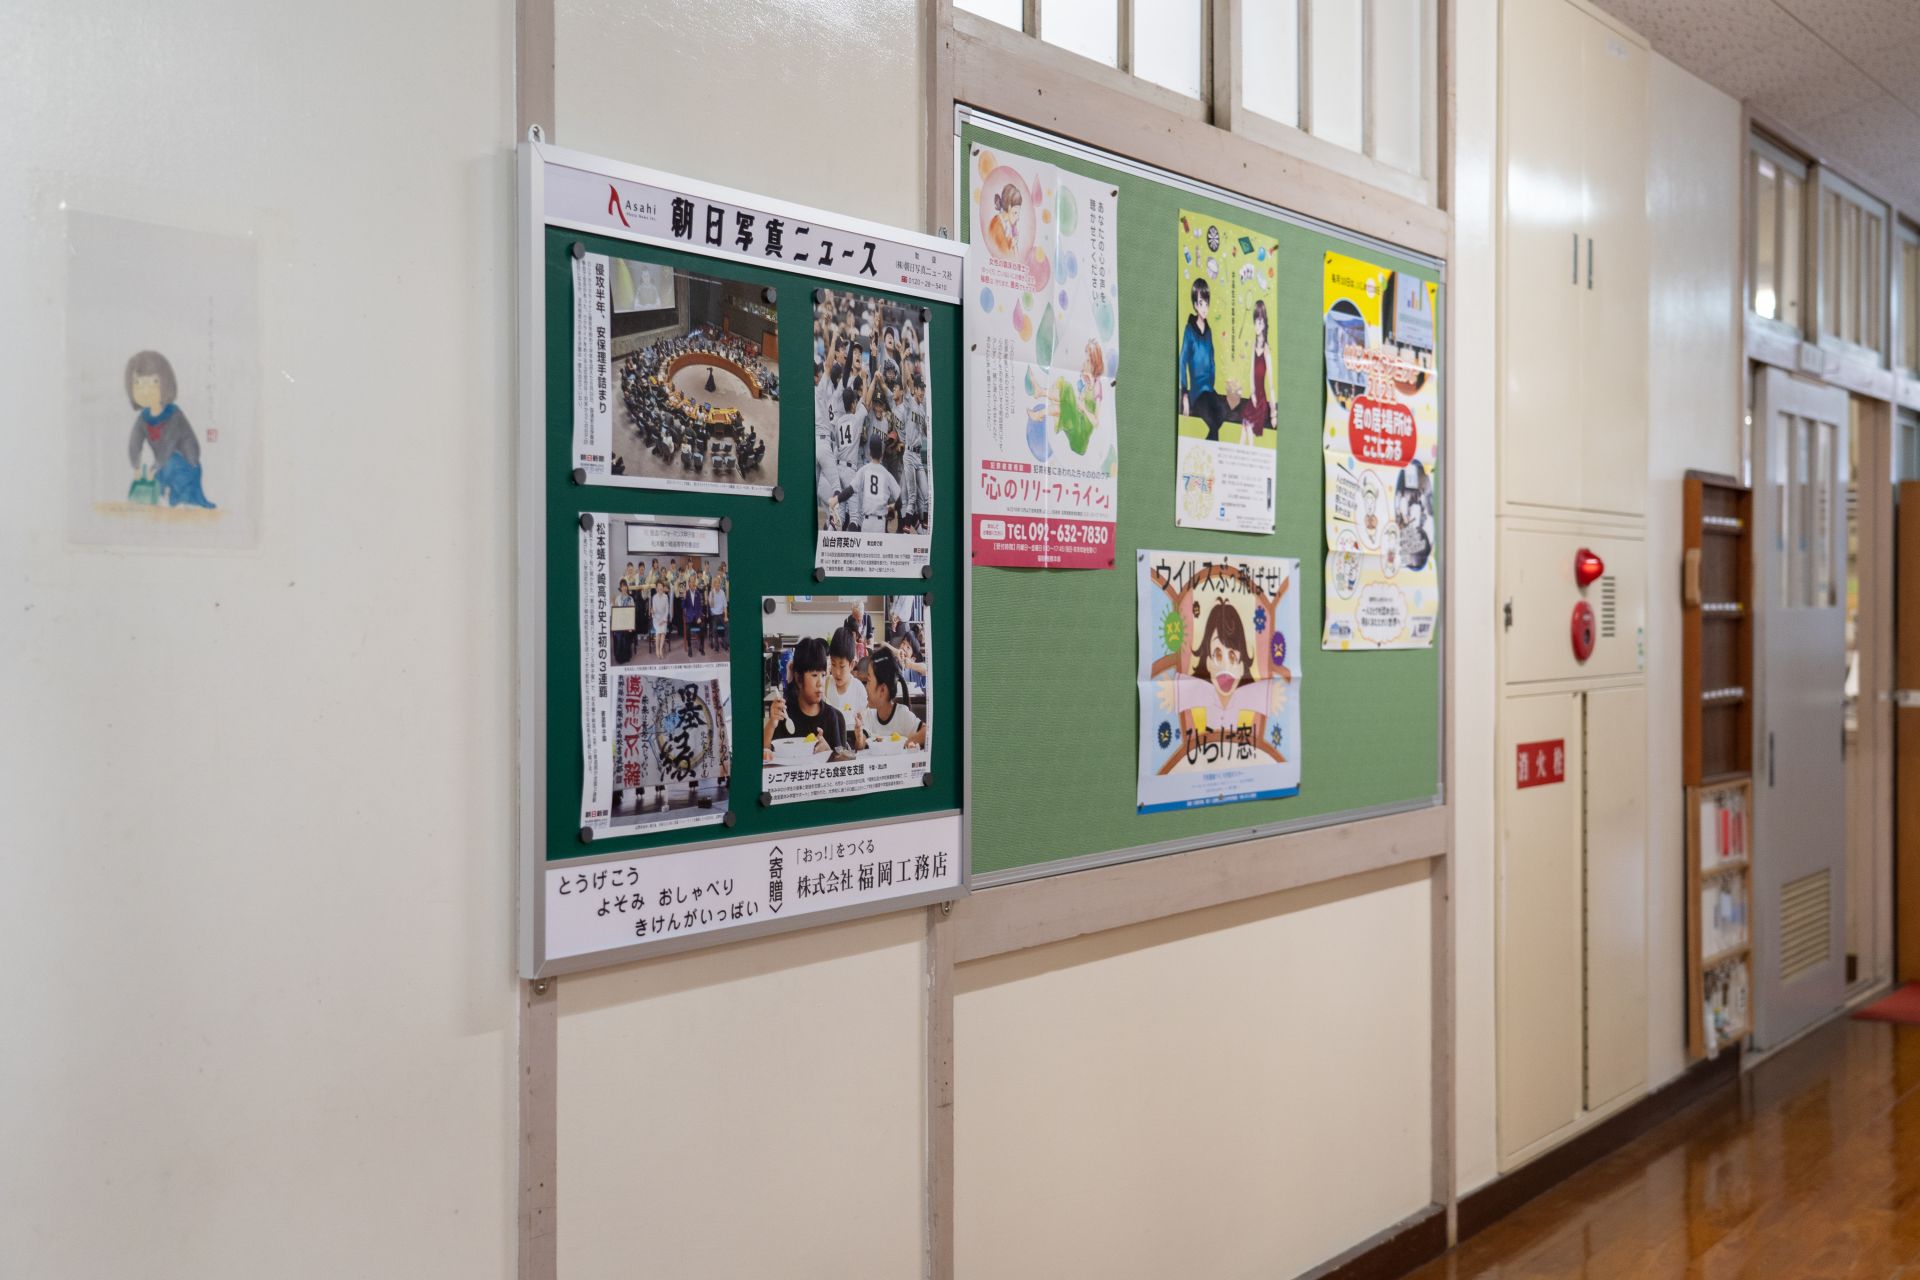 福岡市南区の日佐小学校と横手中学校に「朝日写真ニュース掲示板」を寄贈